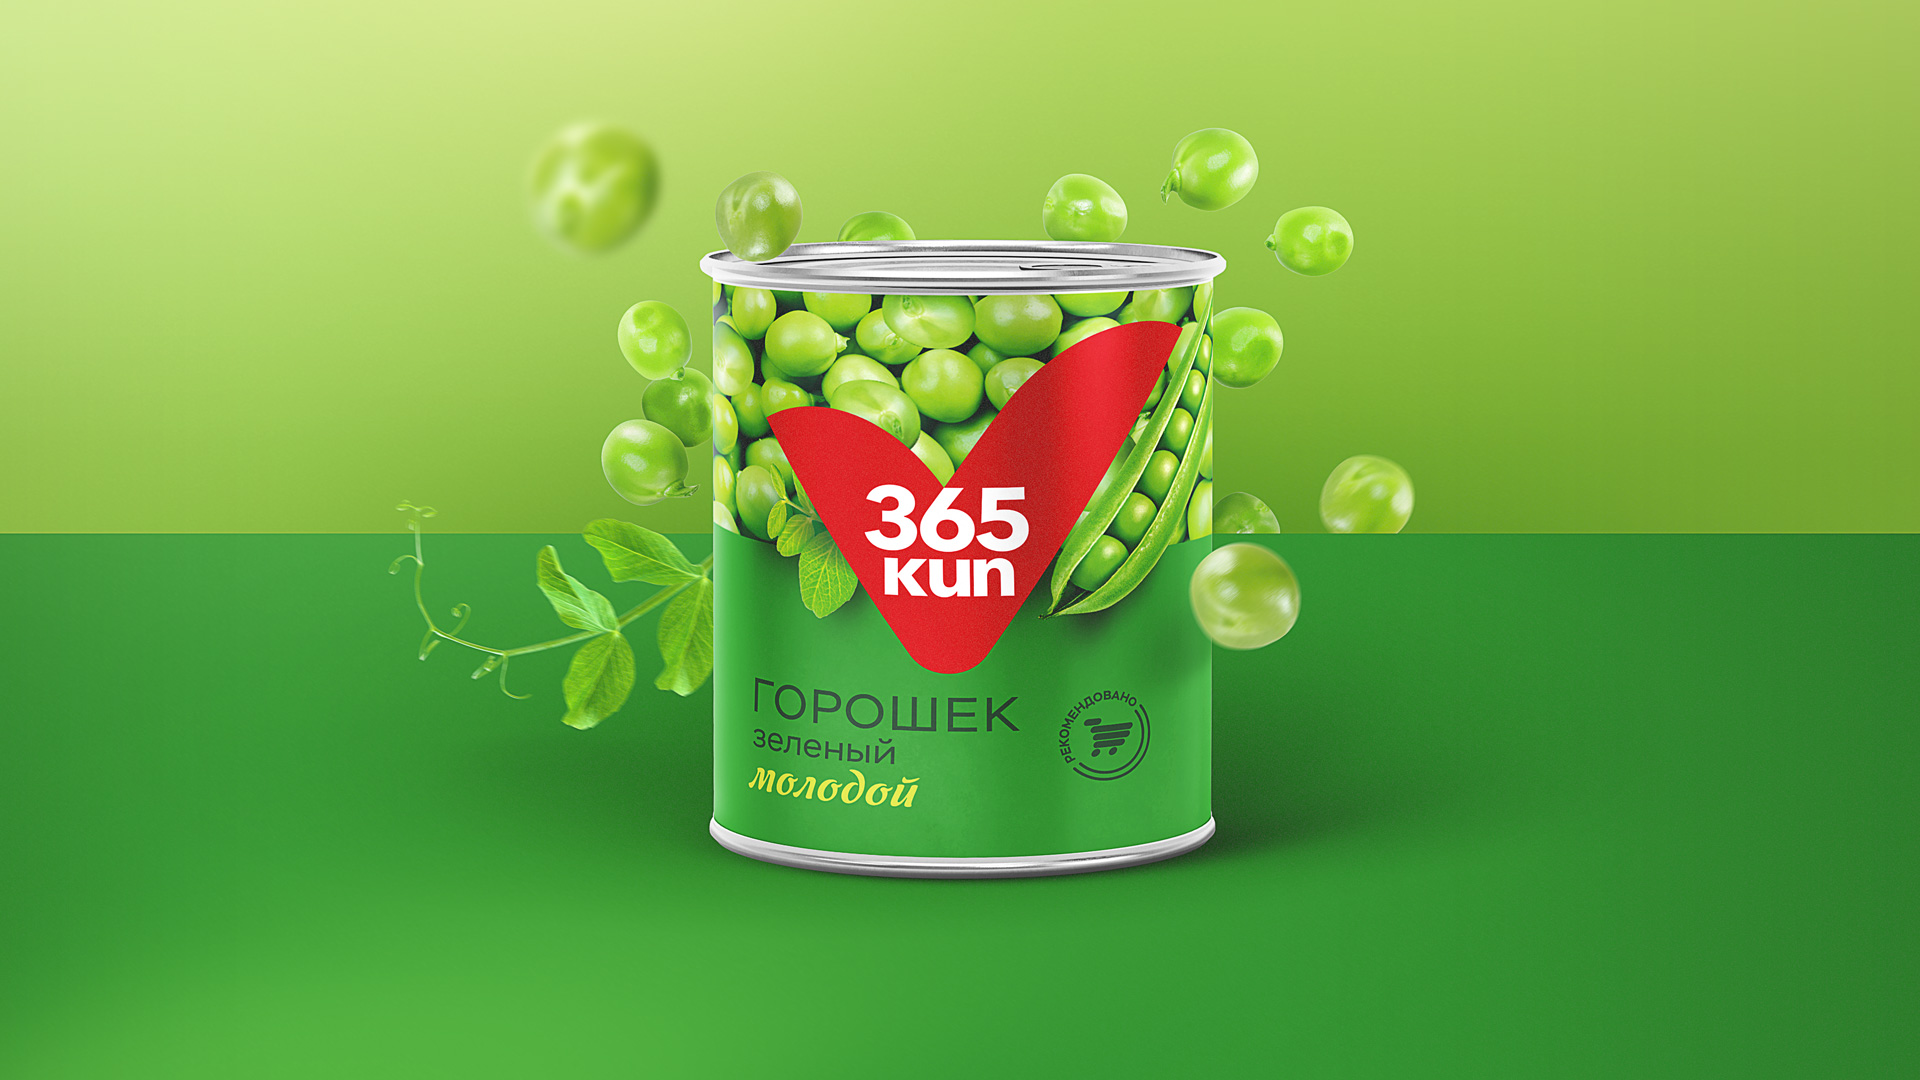 Дизайн упаковки овощных консервов 365 kun